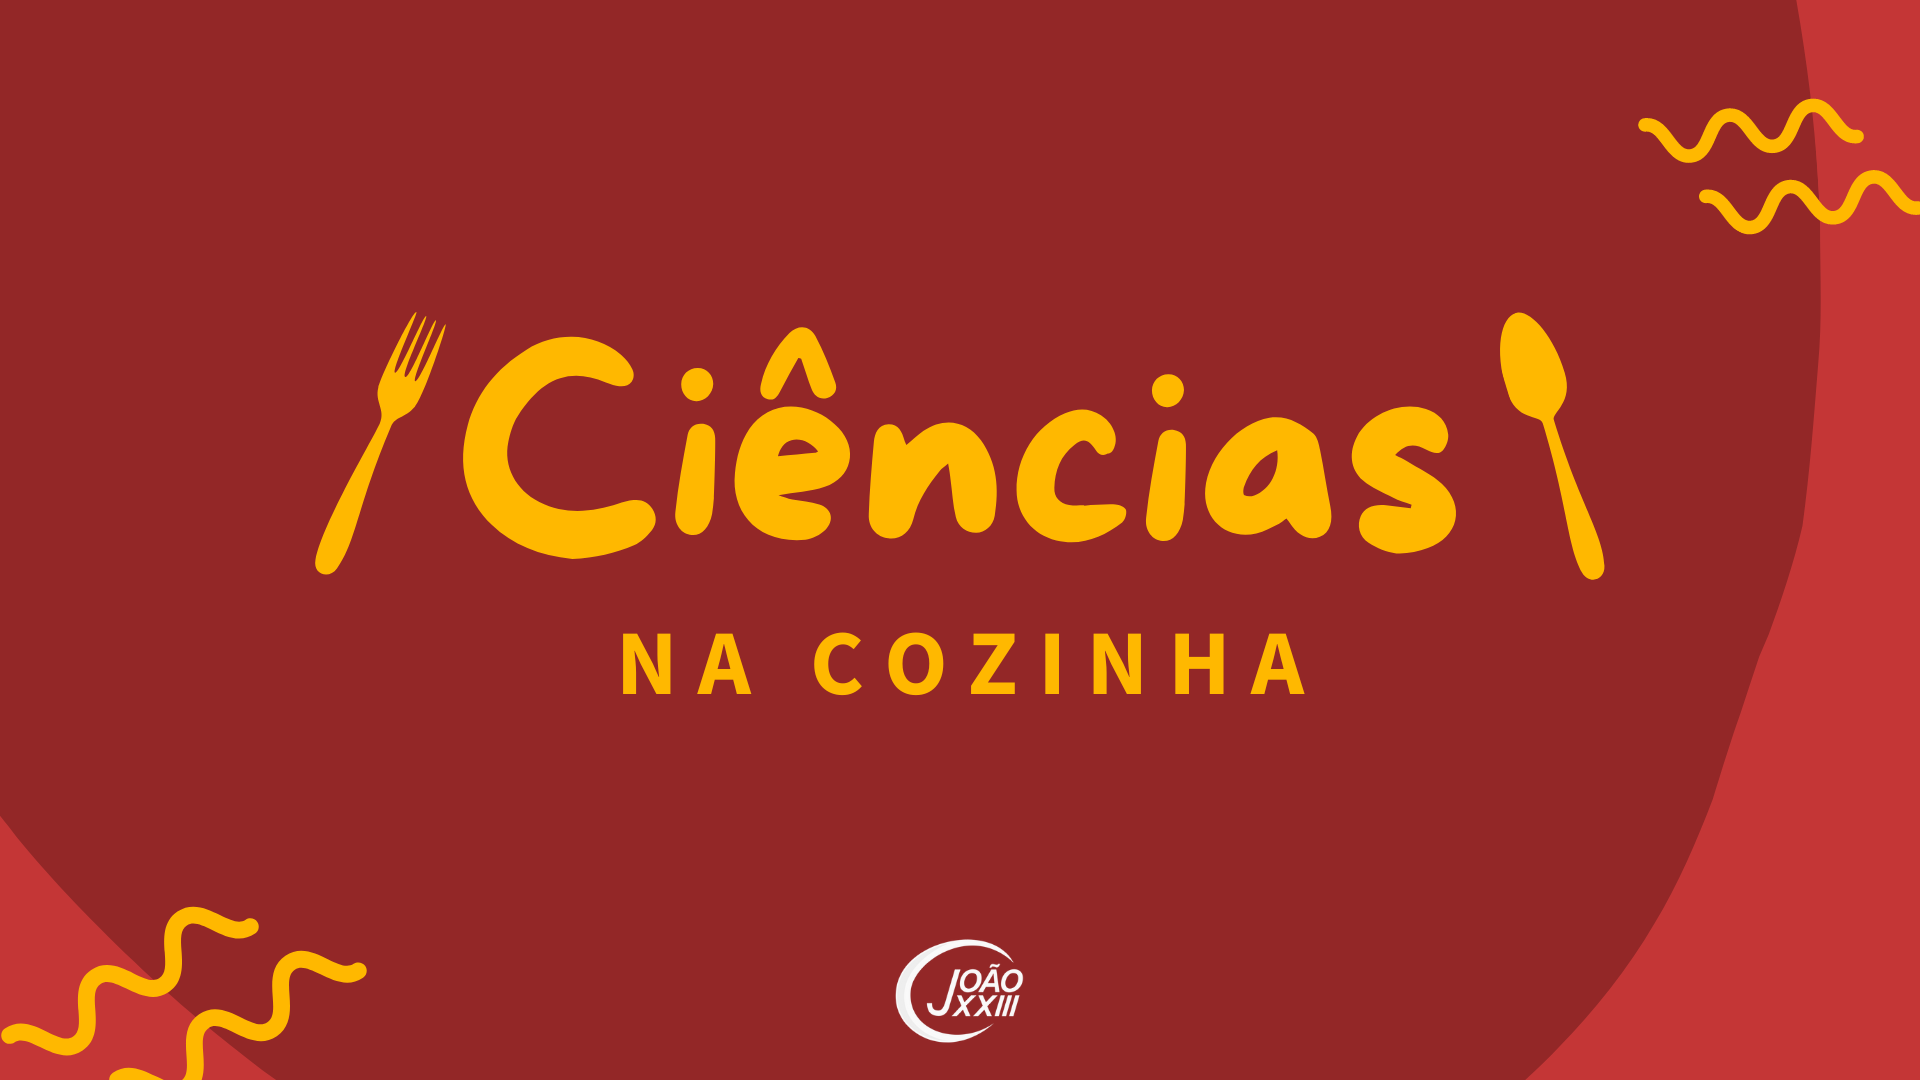 You are currently viewing Ciências na cozinha